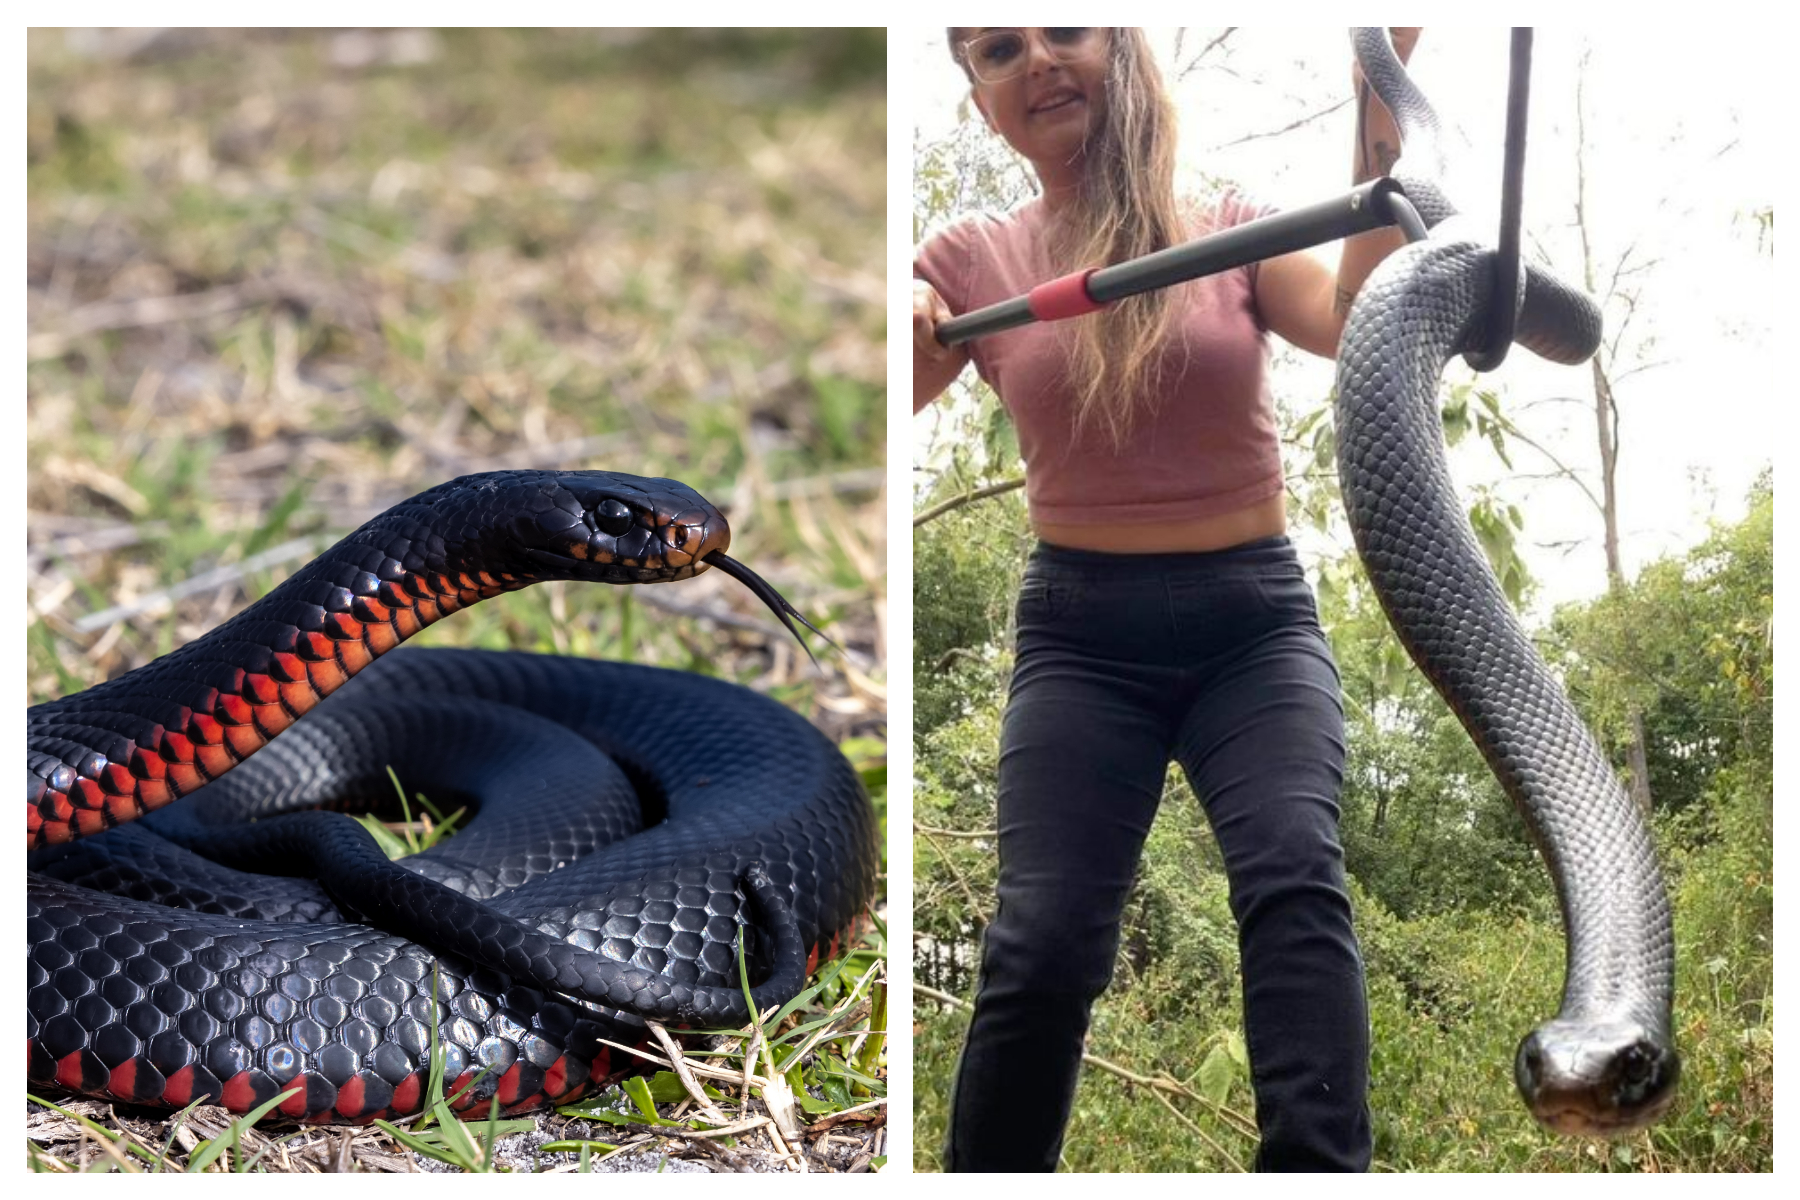 Australia's 10 most dangerous snakes